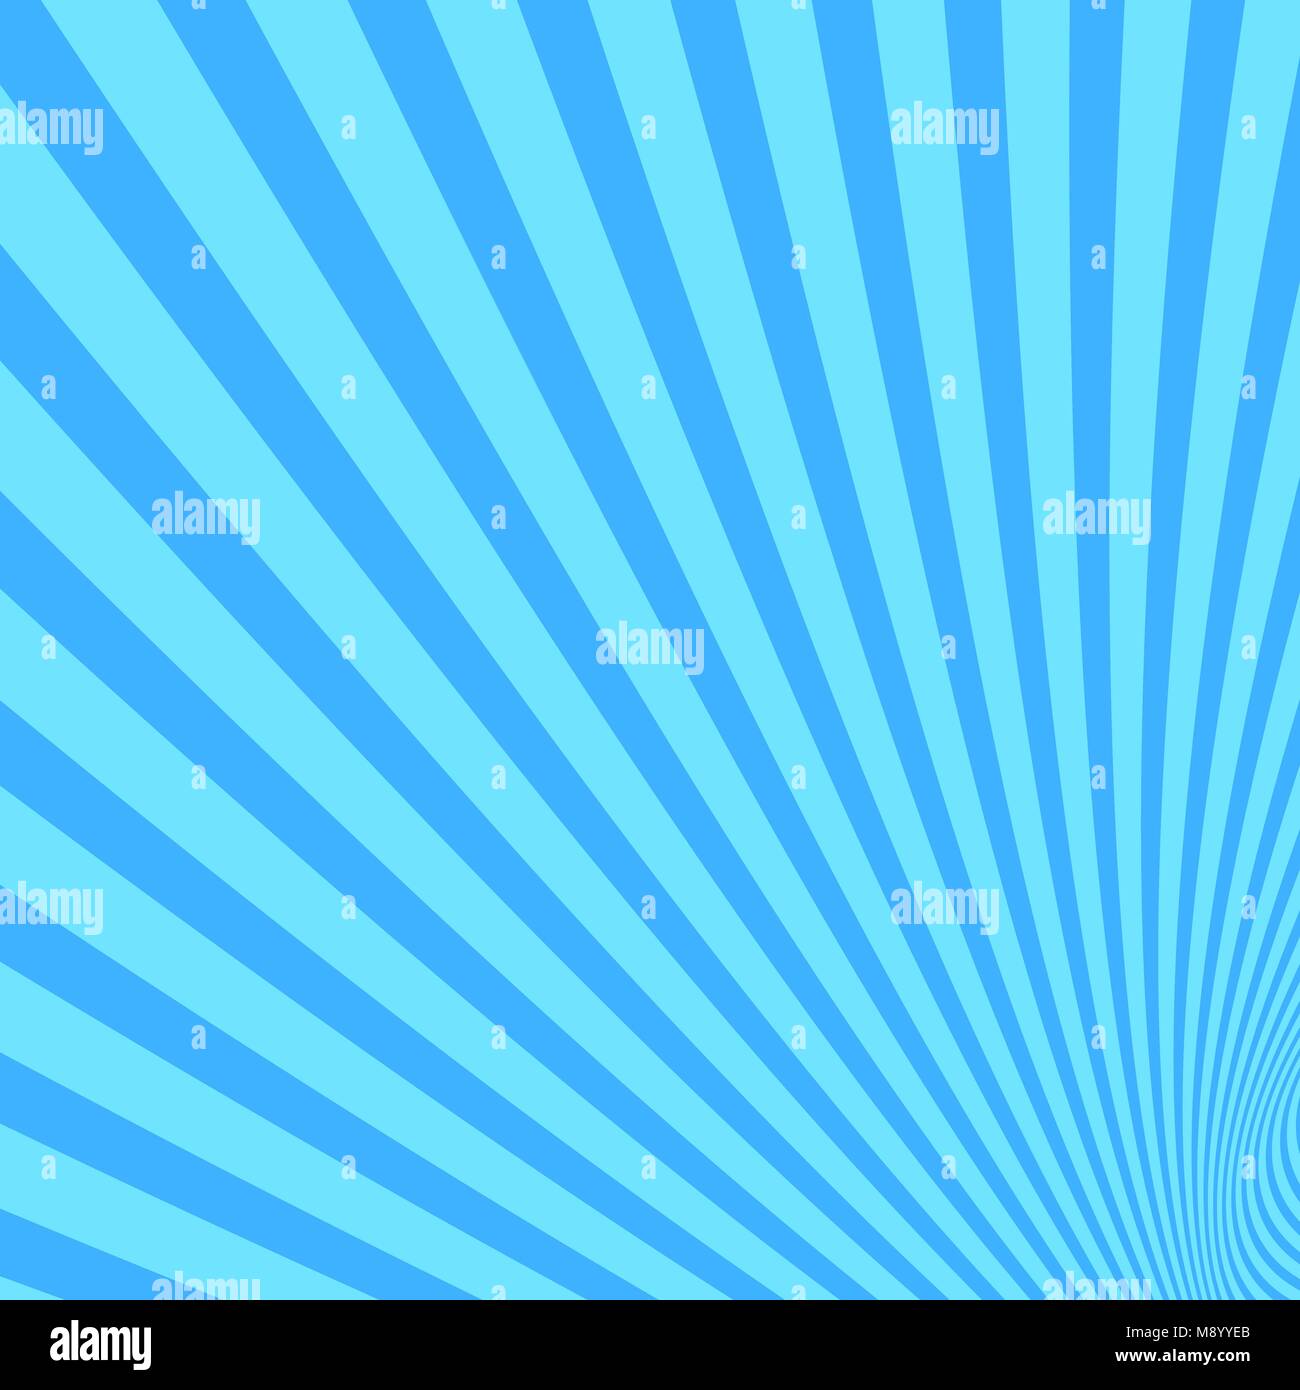 Spirale ray Hintergrund von twisted Strahlen Stock Vektor